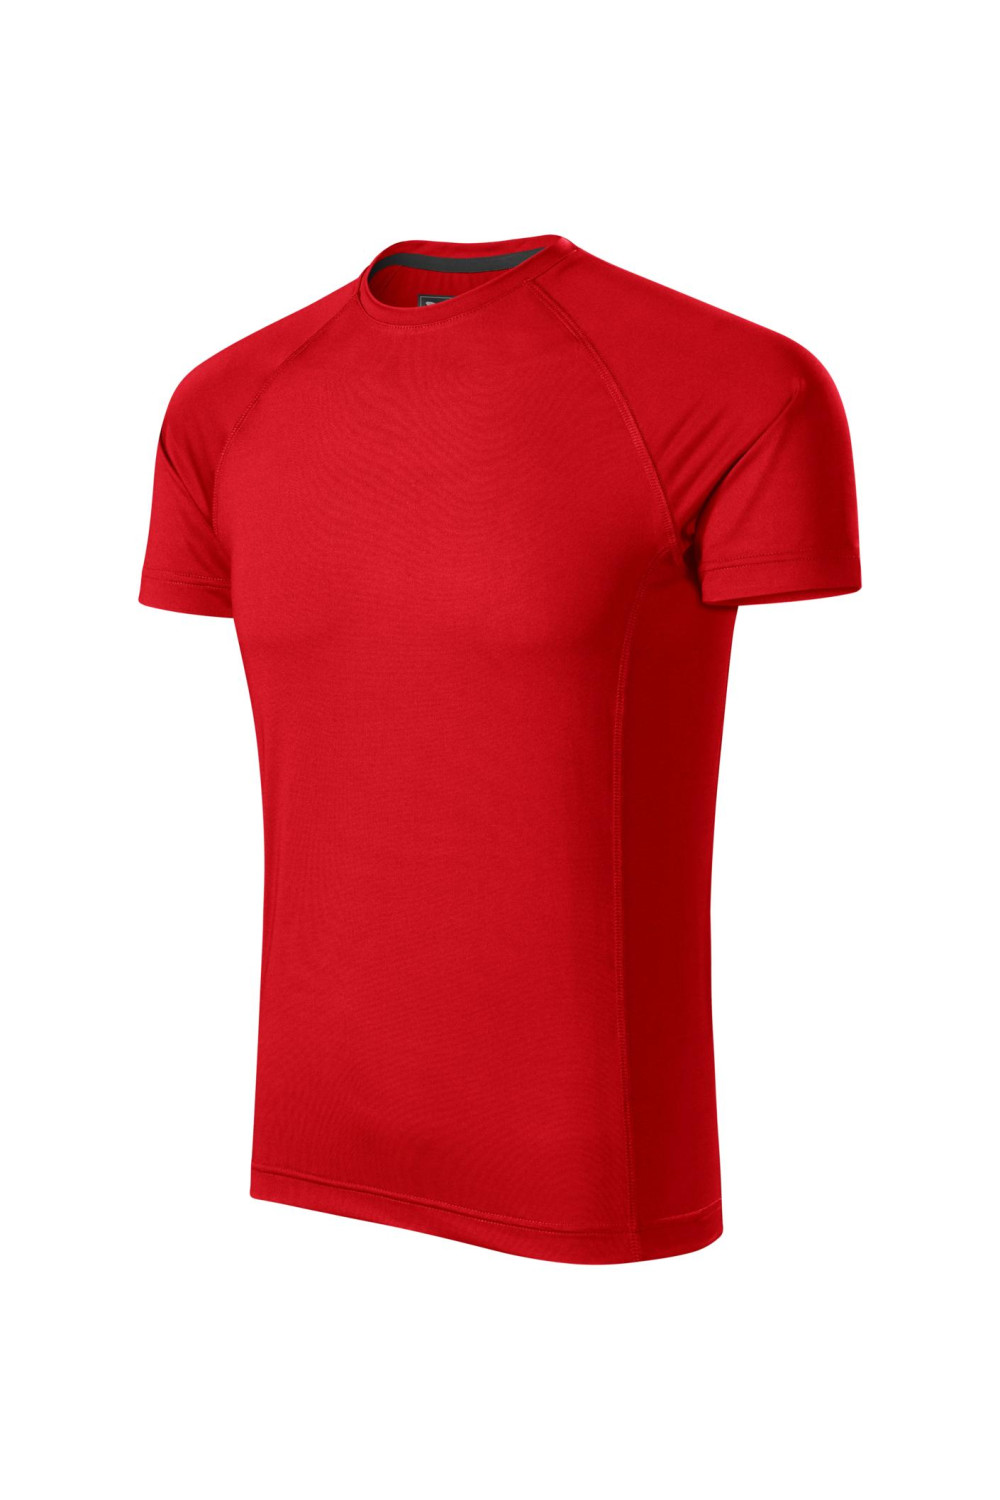 DESTINY 175 MALFINI ADLER Sportowa koszulka męska t-shirt czerwony